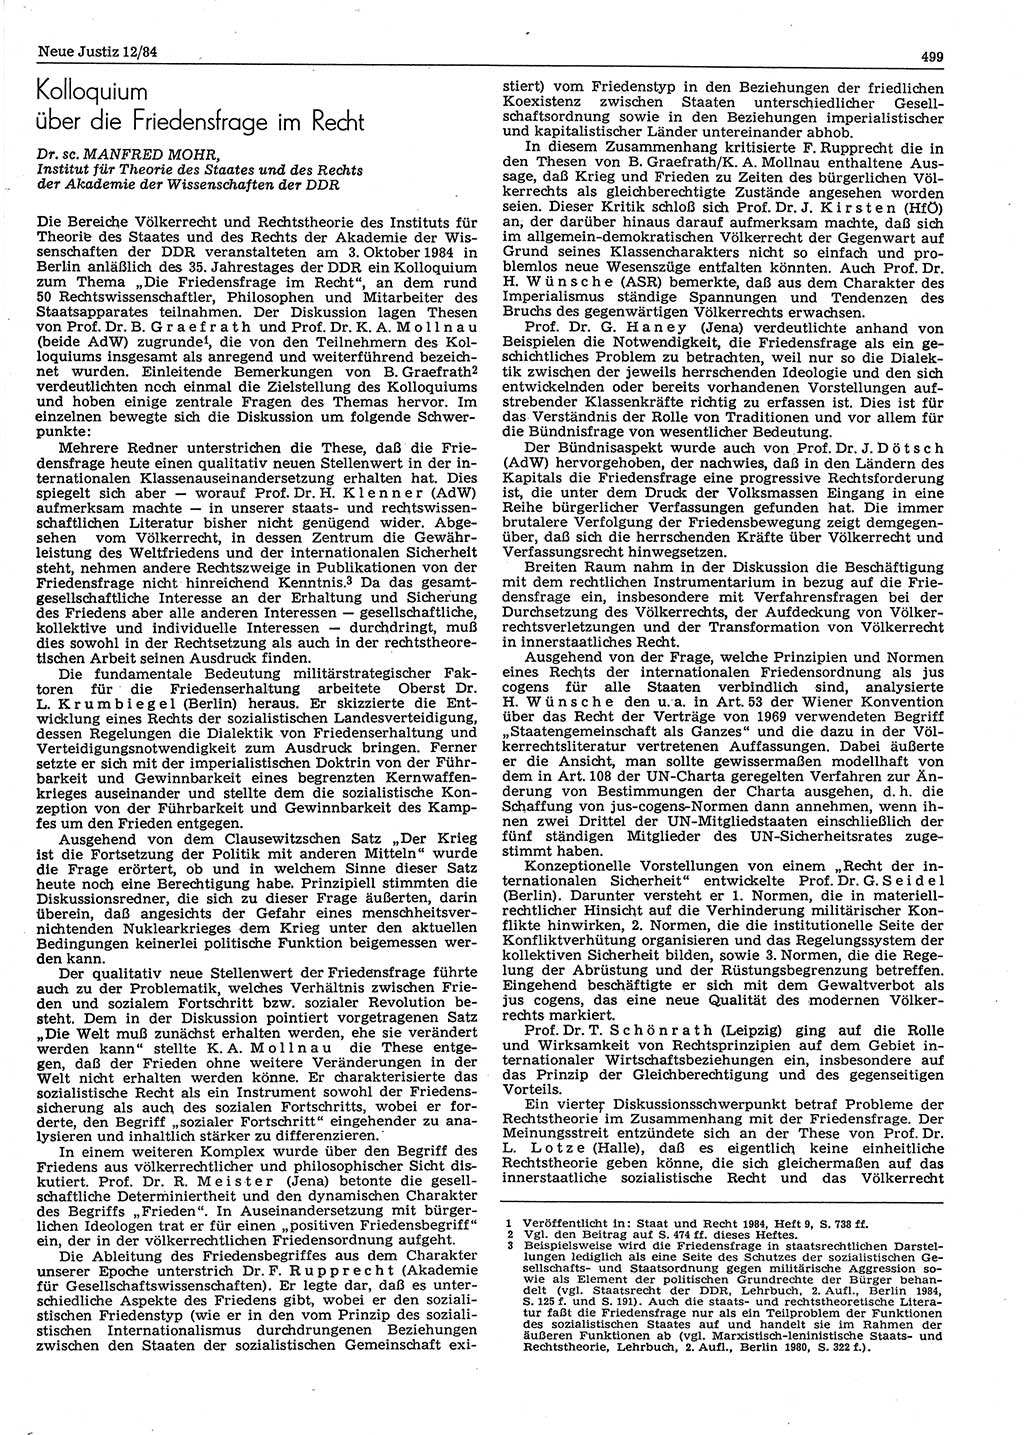 Neue Justiz (NJ), Zeitschrift für sozialistisches Recht und Gesetzlichkeit [Deutsche Demokratische Republik (DDR)], 38. Jahrgang 1984, Seite 499 (NJ DDR 1984, S. 499)